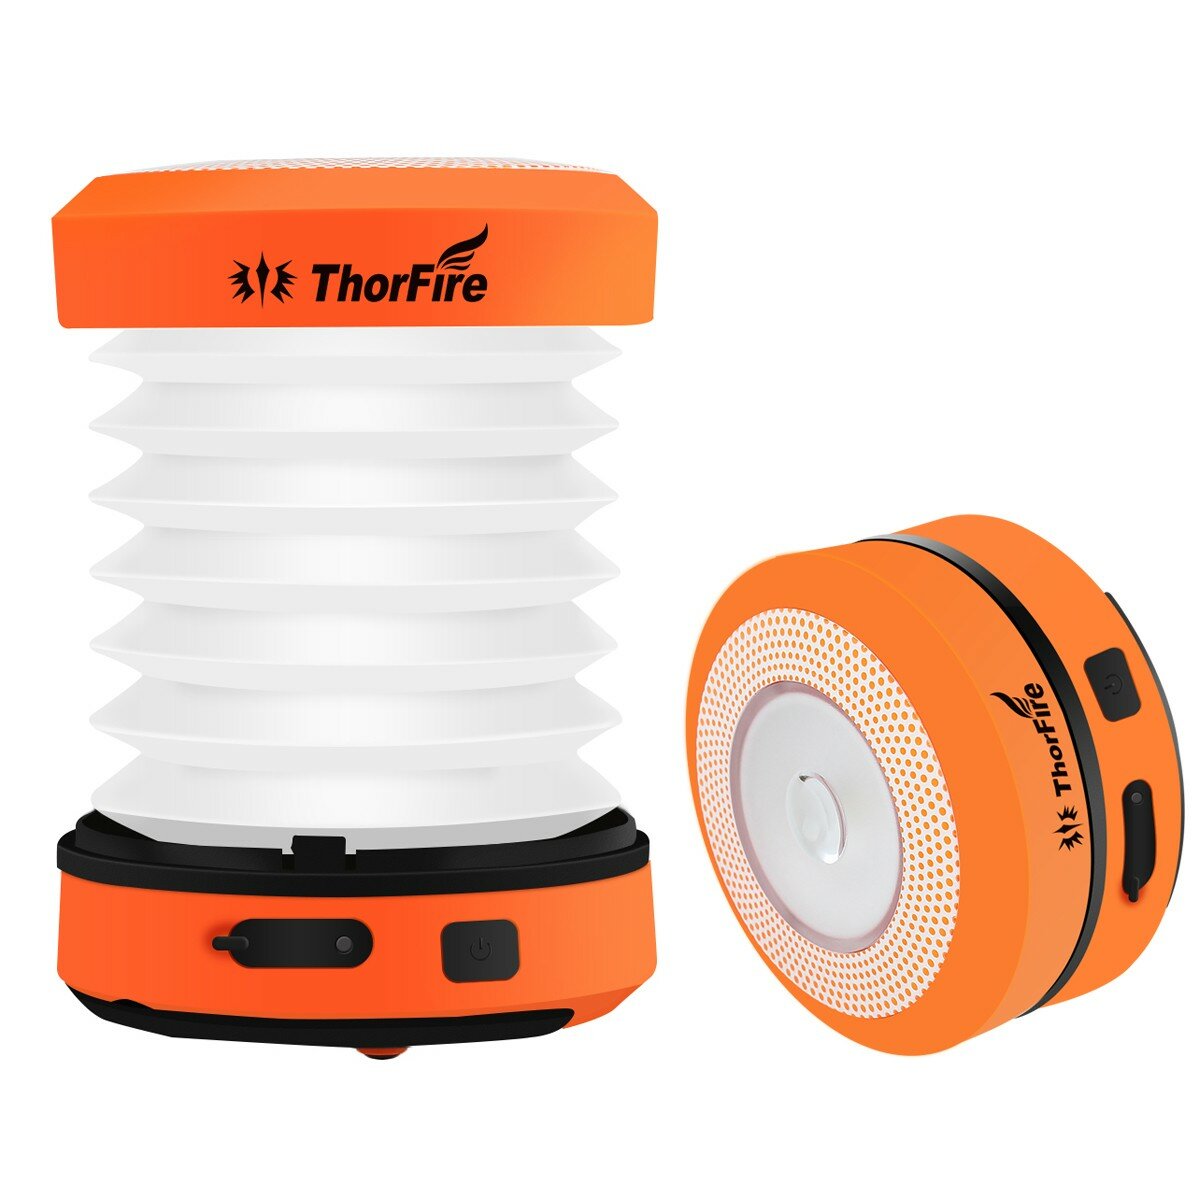 ThorFire CL01 LED キャンプライト ハンドクランク USB 充電可能ランタン 折りたたみ式ミニテントランプ 緊急トーチナイトライト アウトドアキャンプ用